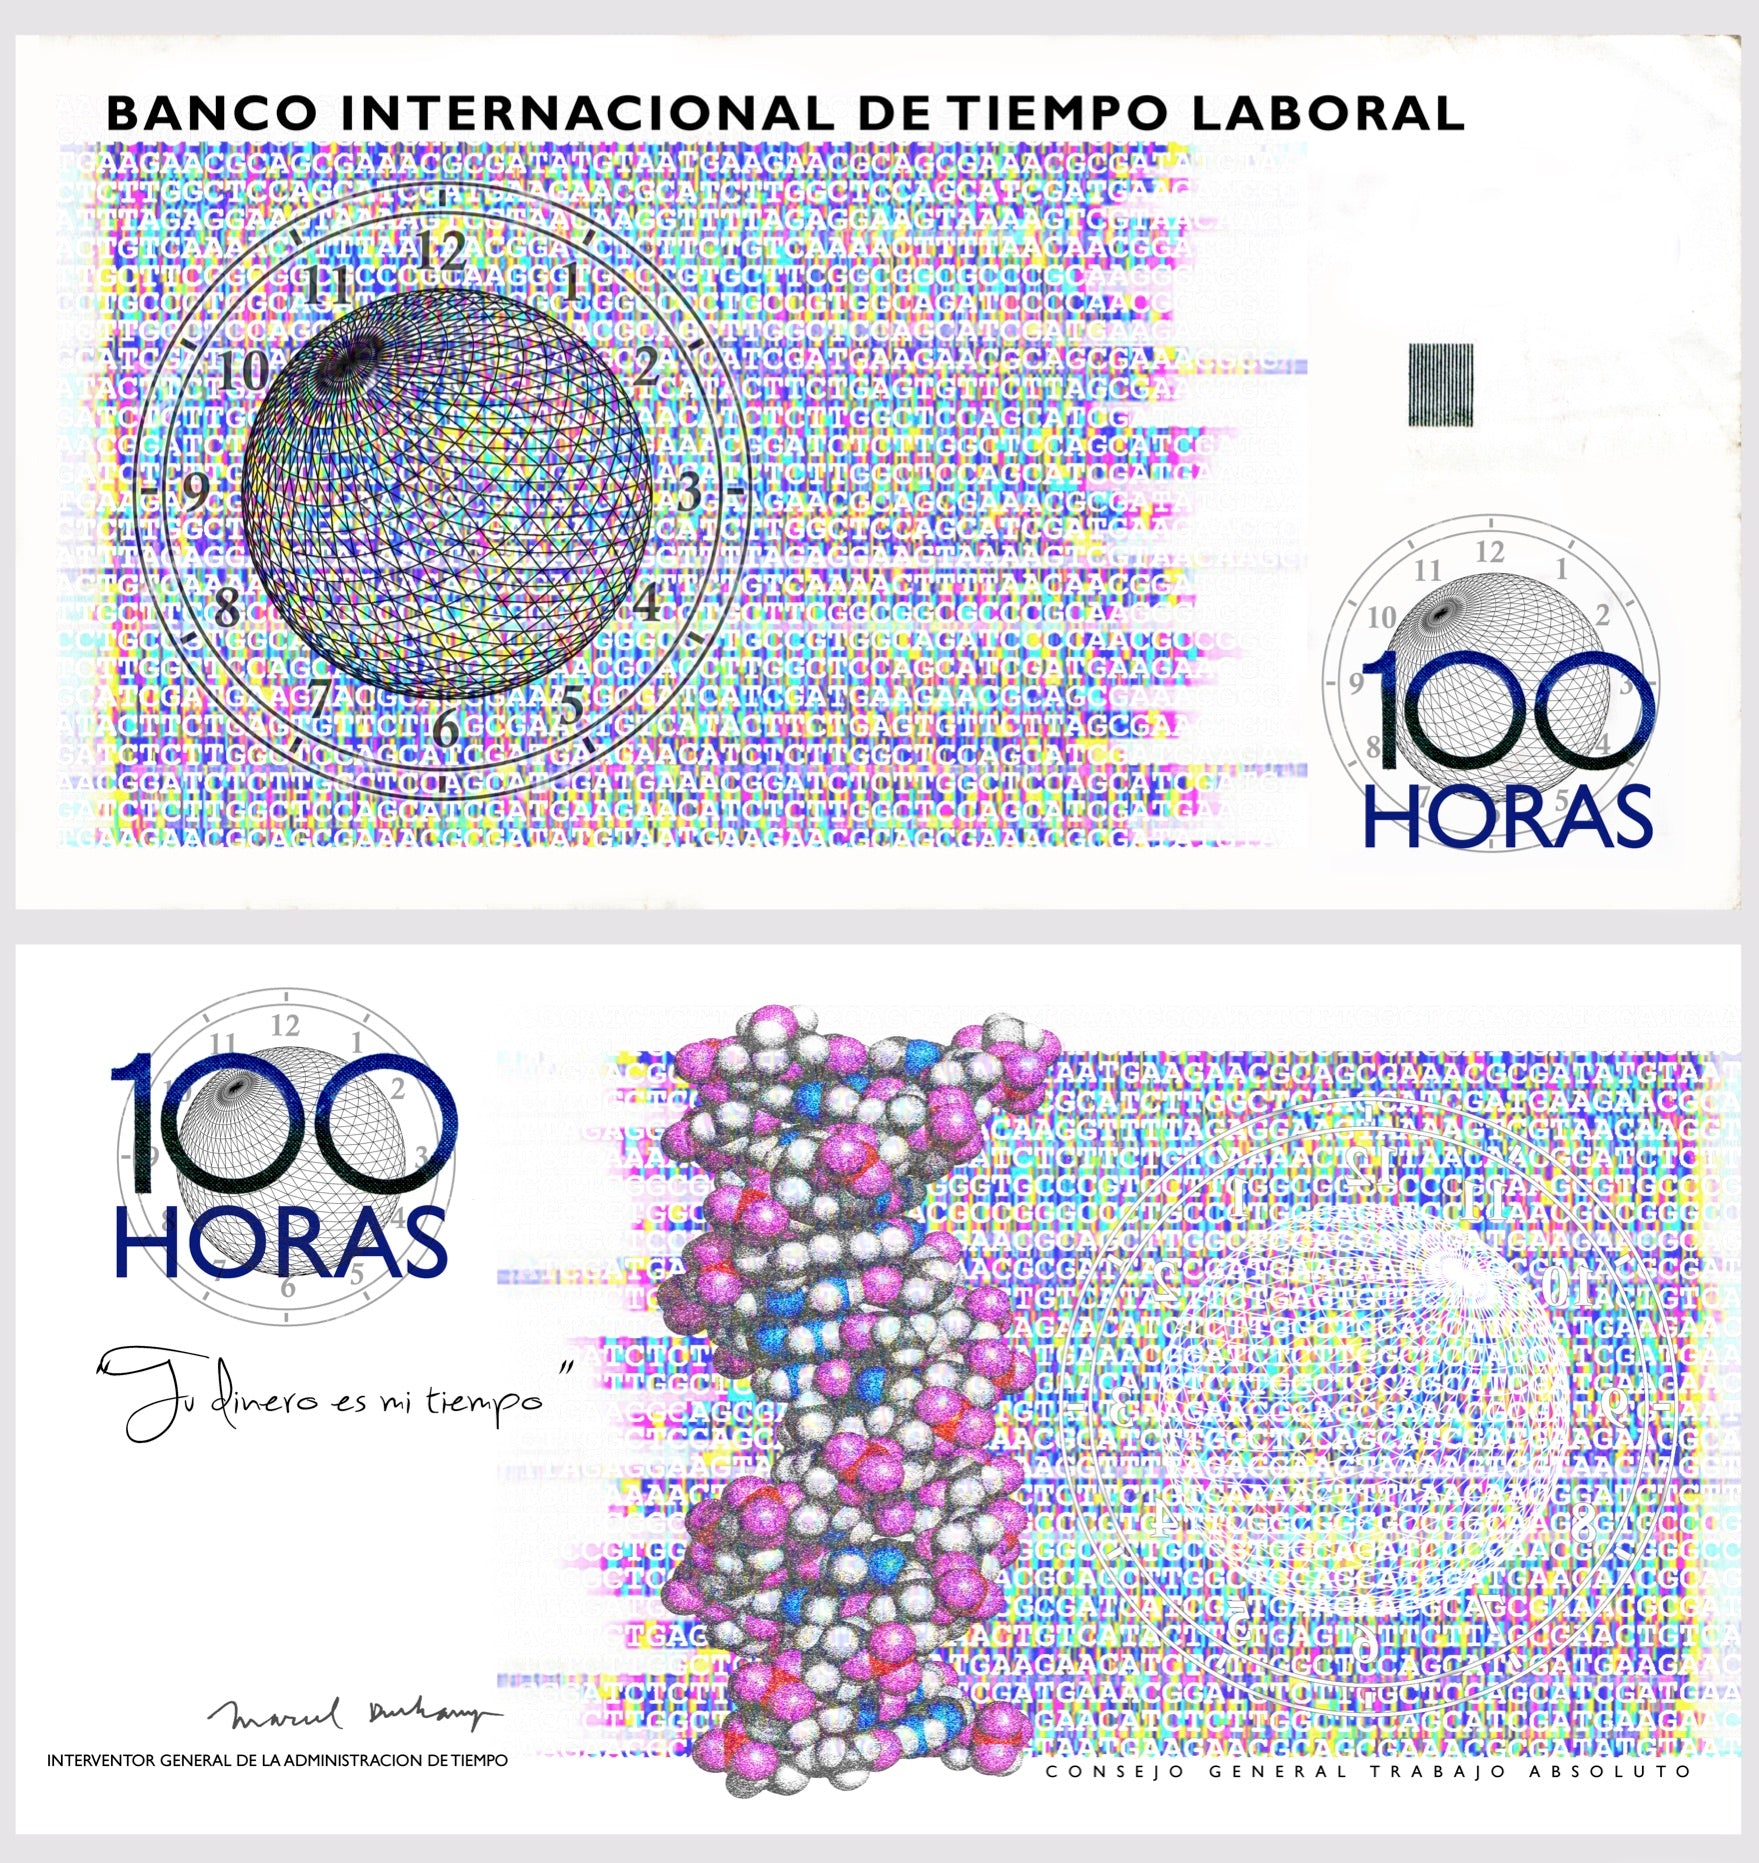 Banco Internacional de Tiempo Laboral. 100 horas